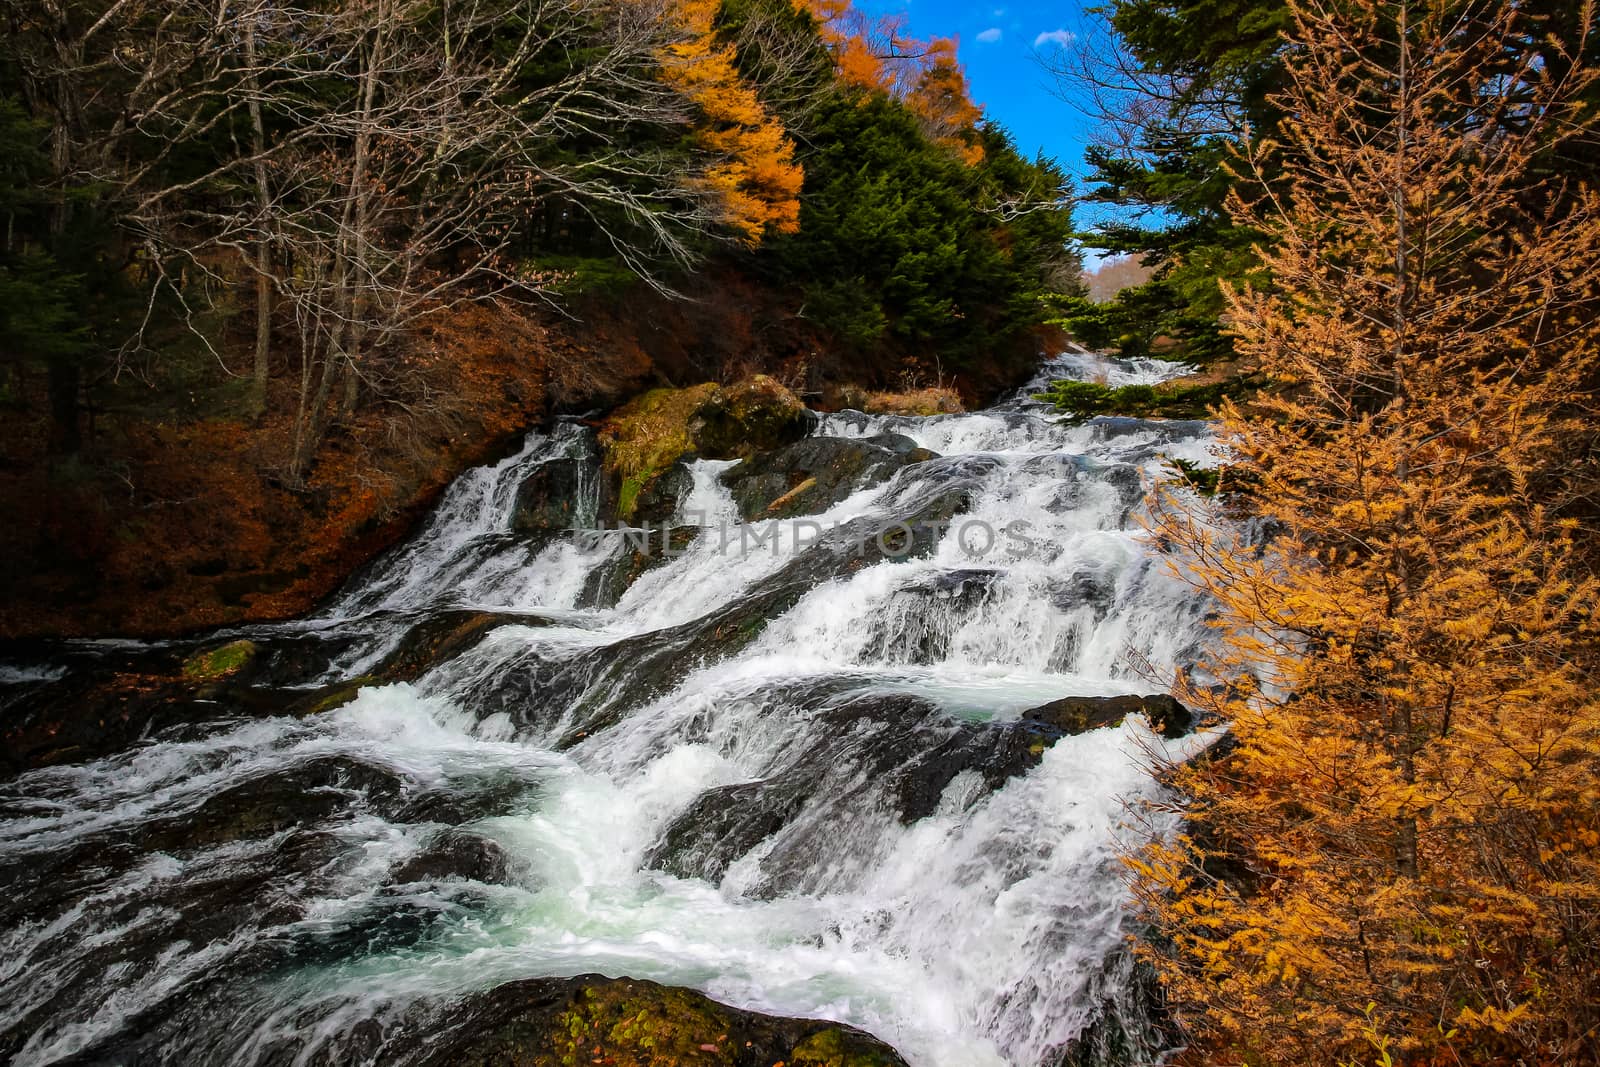 Ryuzu waterfall in Nikko Japan by simpleBE